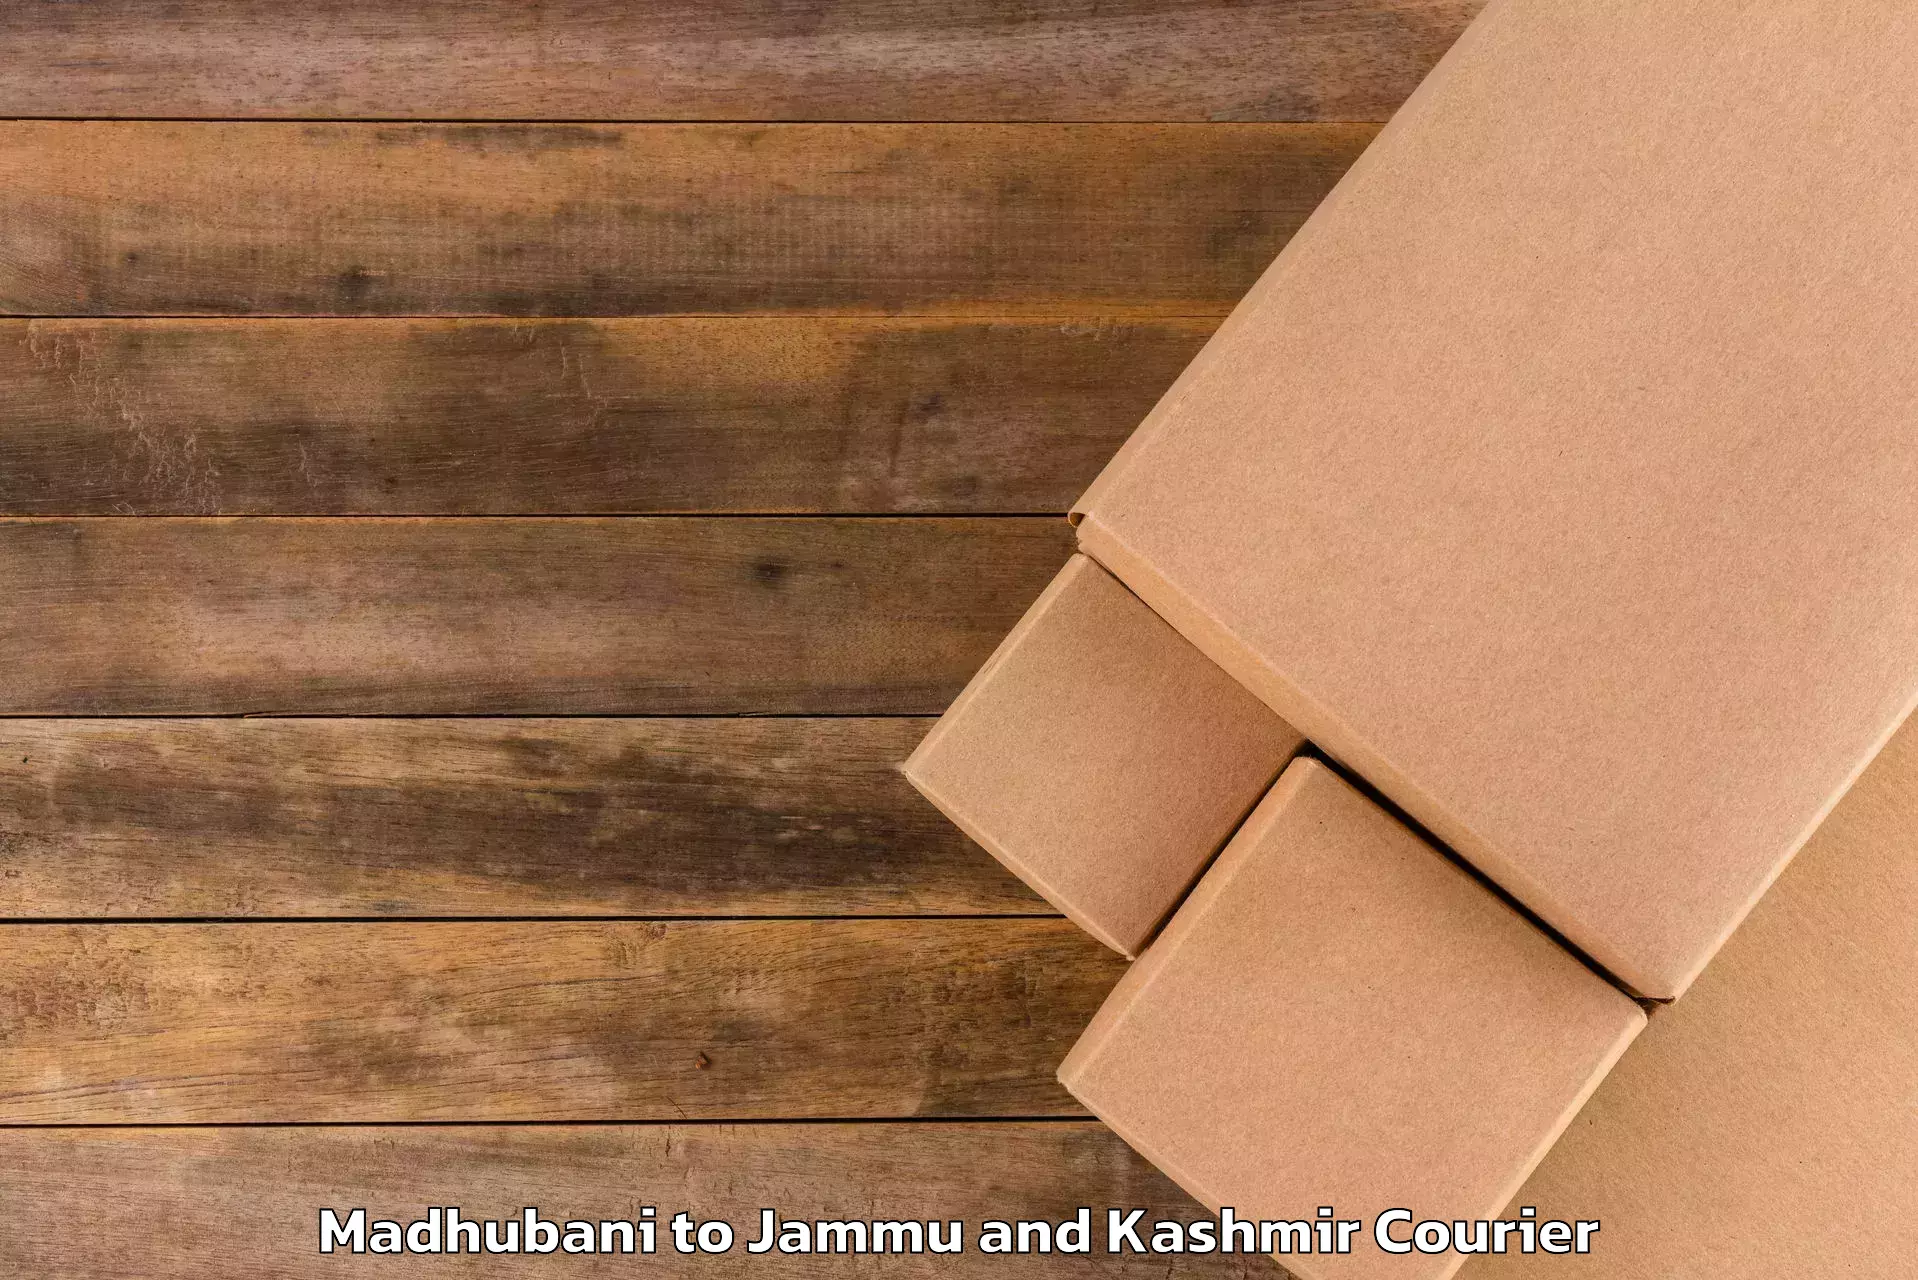 Baggage delivery technology Madhubani to Jammu and Kashmir